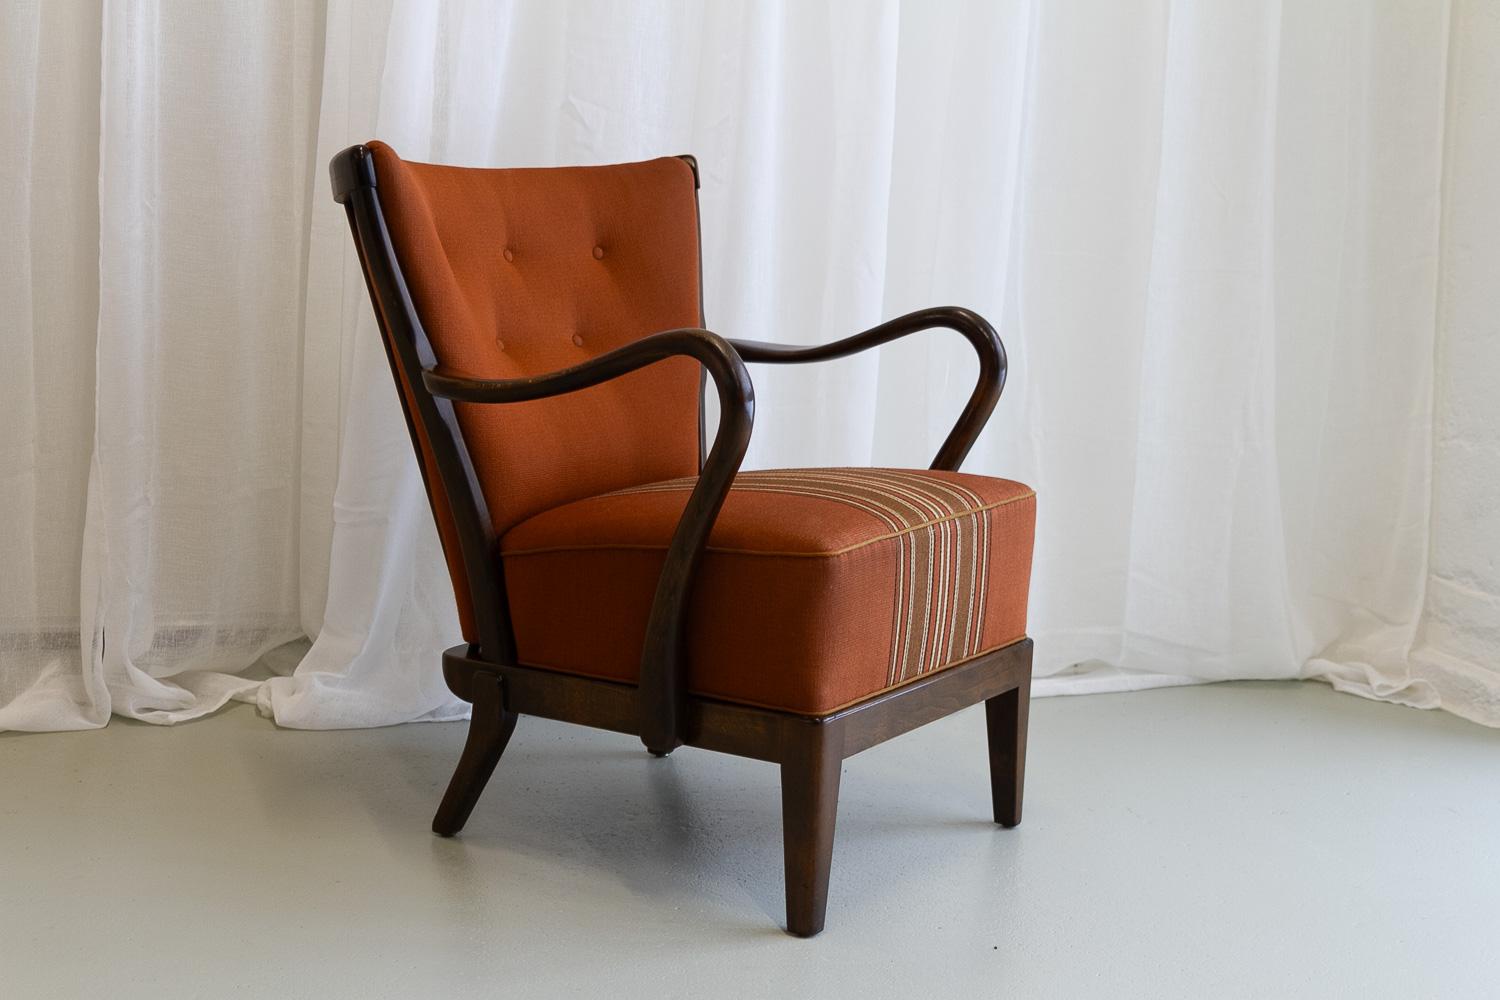 Beech Danish Modern Lounge Chair by Alfred Christensen for Slagelse Møbelværk, 1940s.